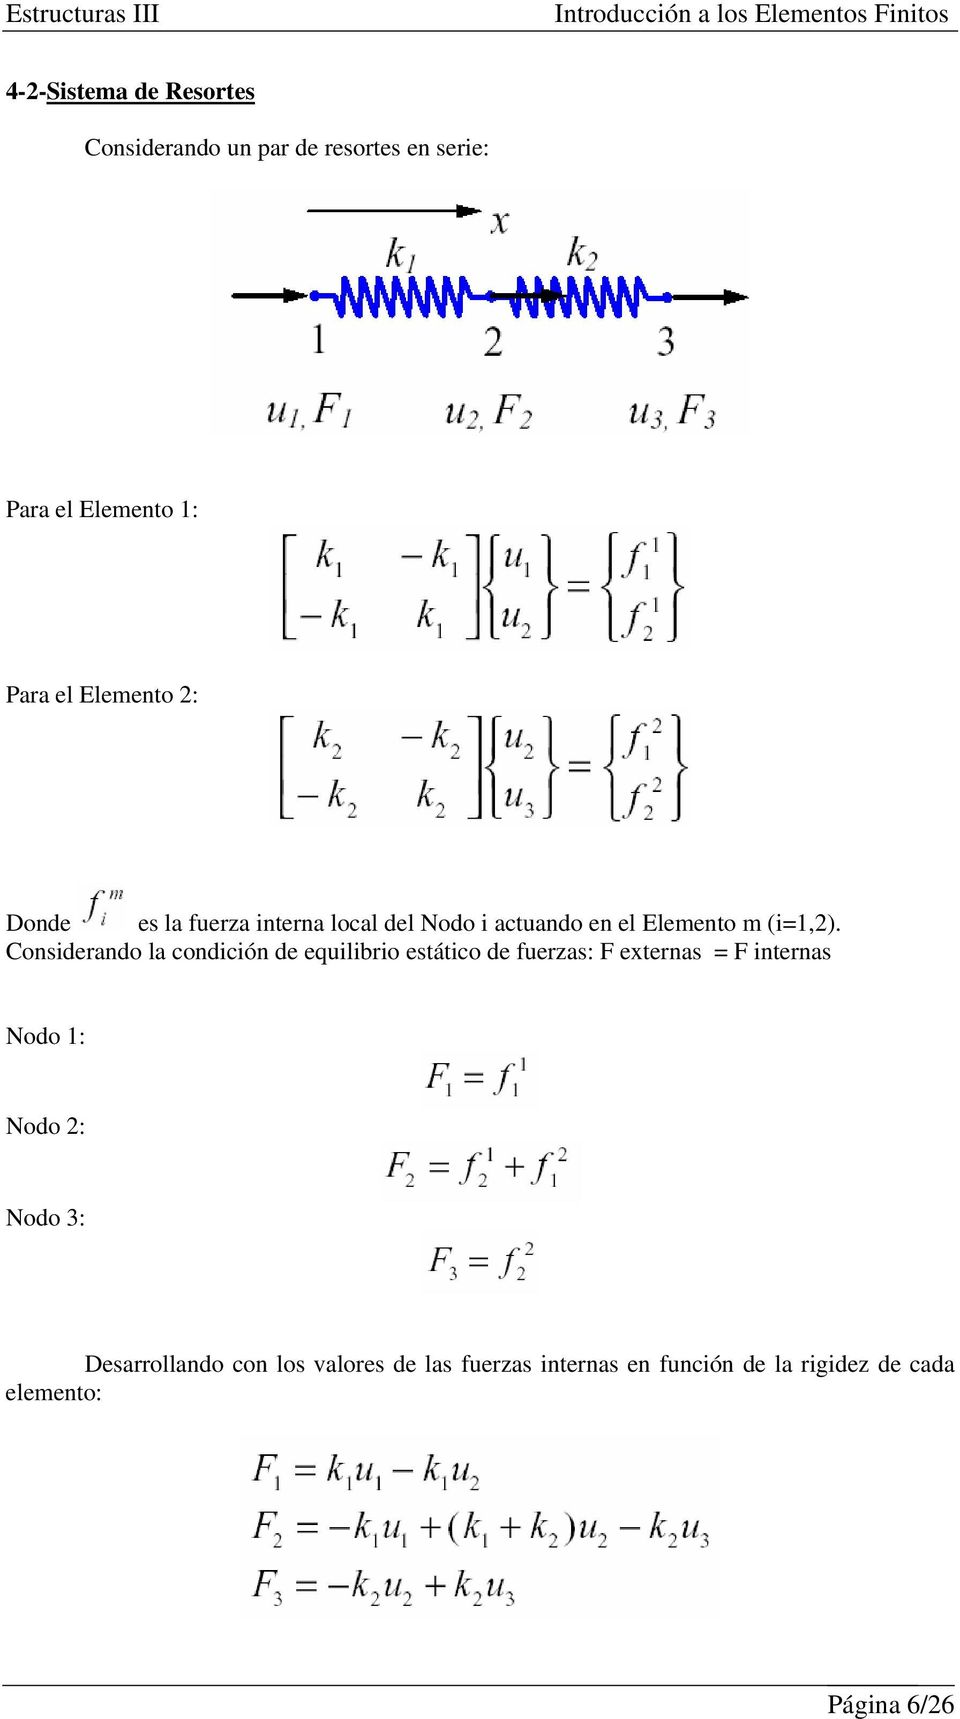 Considerando la condición de equilibrio estático de fuerzas: F externas = F internas Nodo 1: Nodo 2: